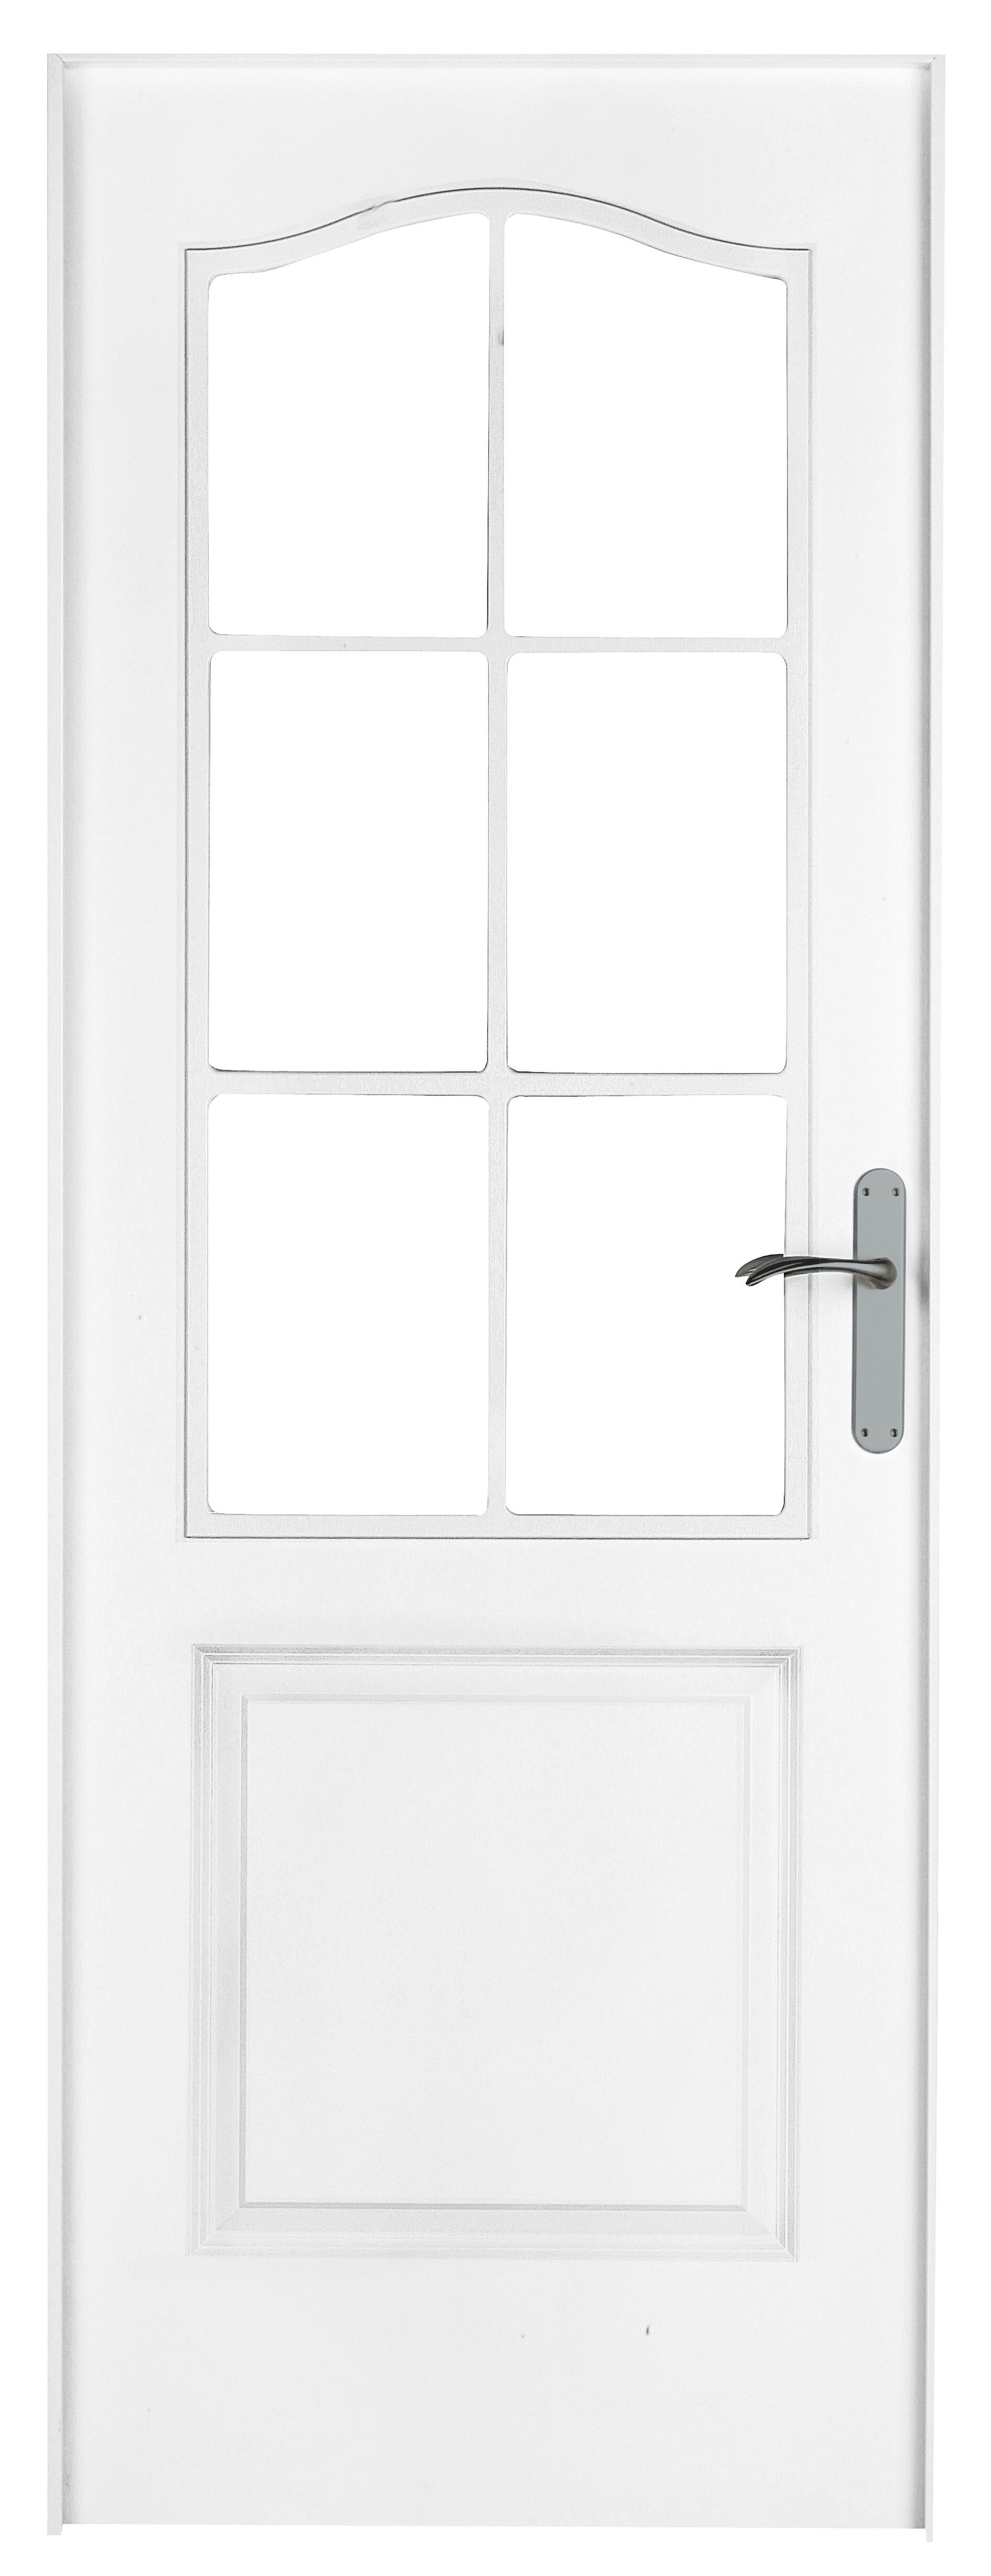 Puerta abatible bonn blanca aero blanco izquierda con cristal de 110x30 y 82.5cm